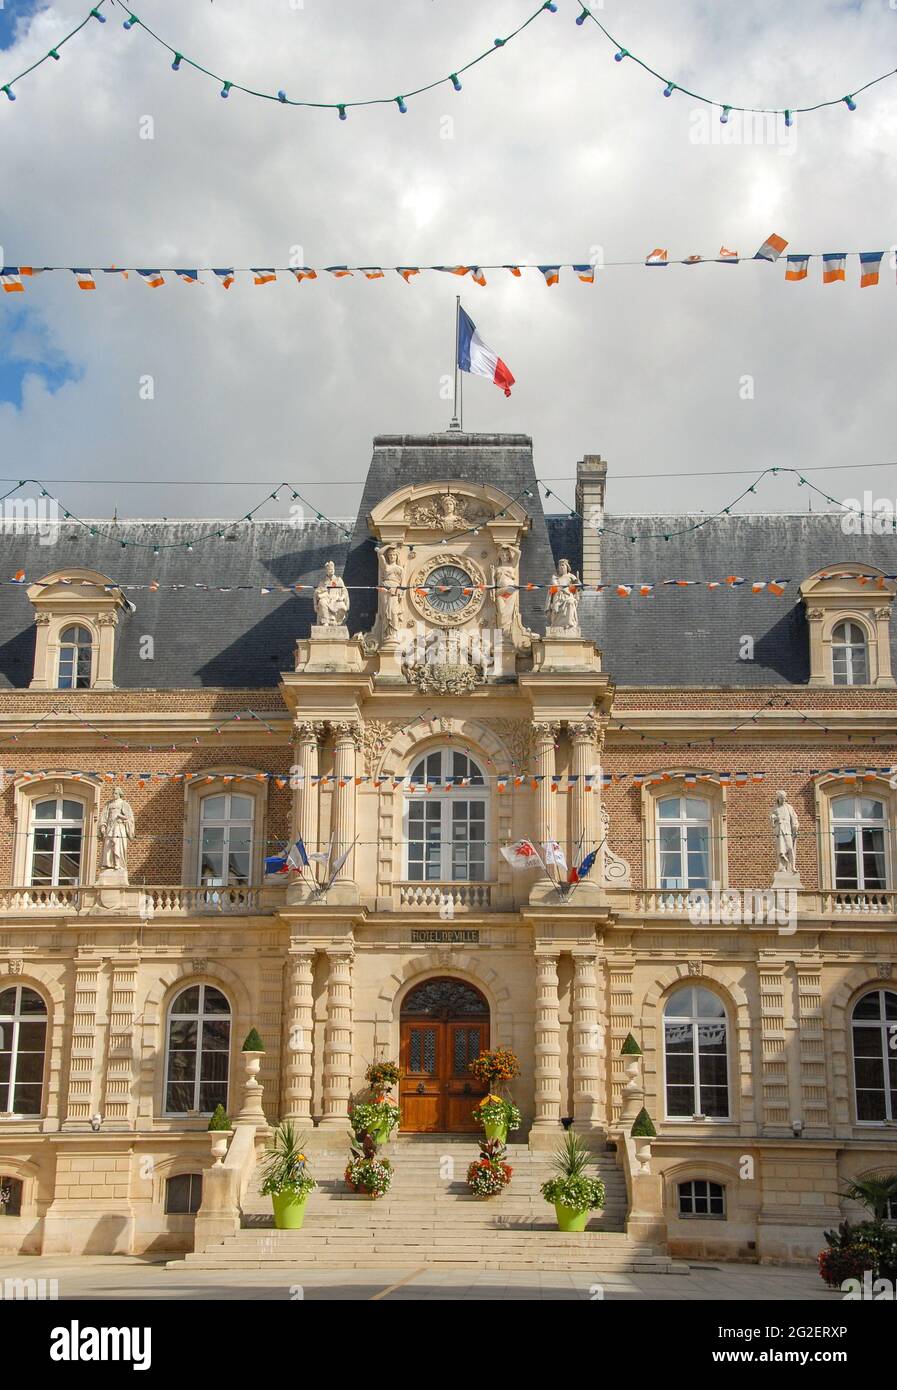 L'Hôtel de ville d'Amiens, Picardie, France Banque D'Images